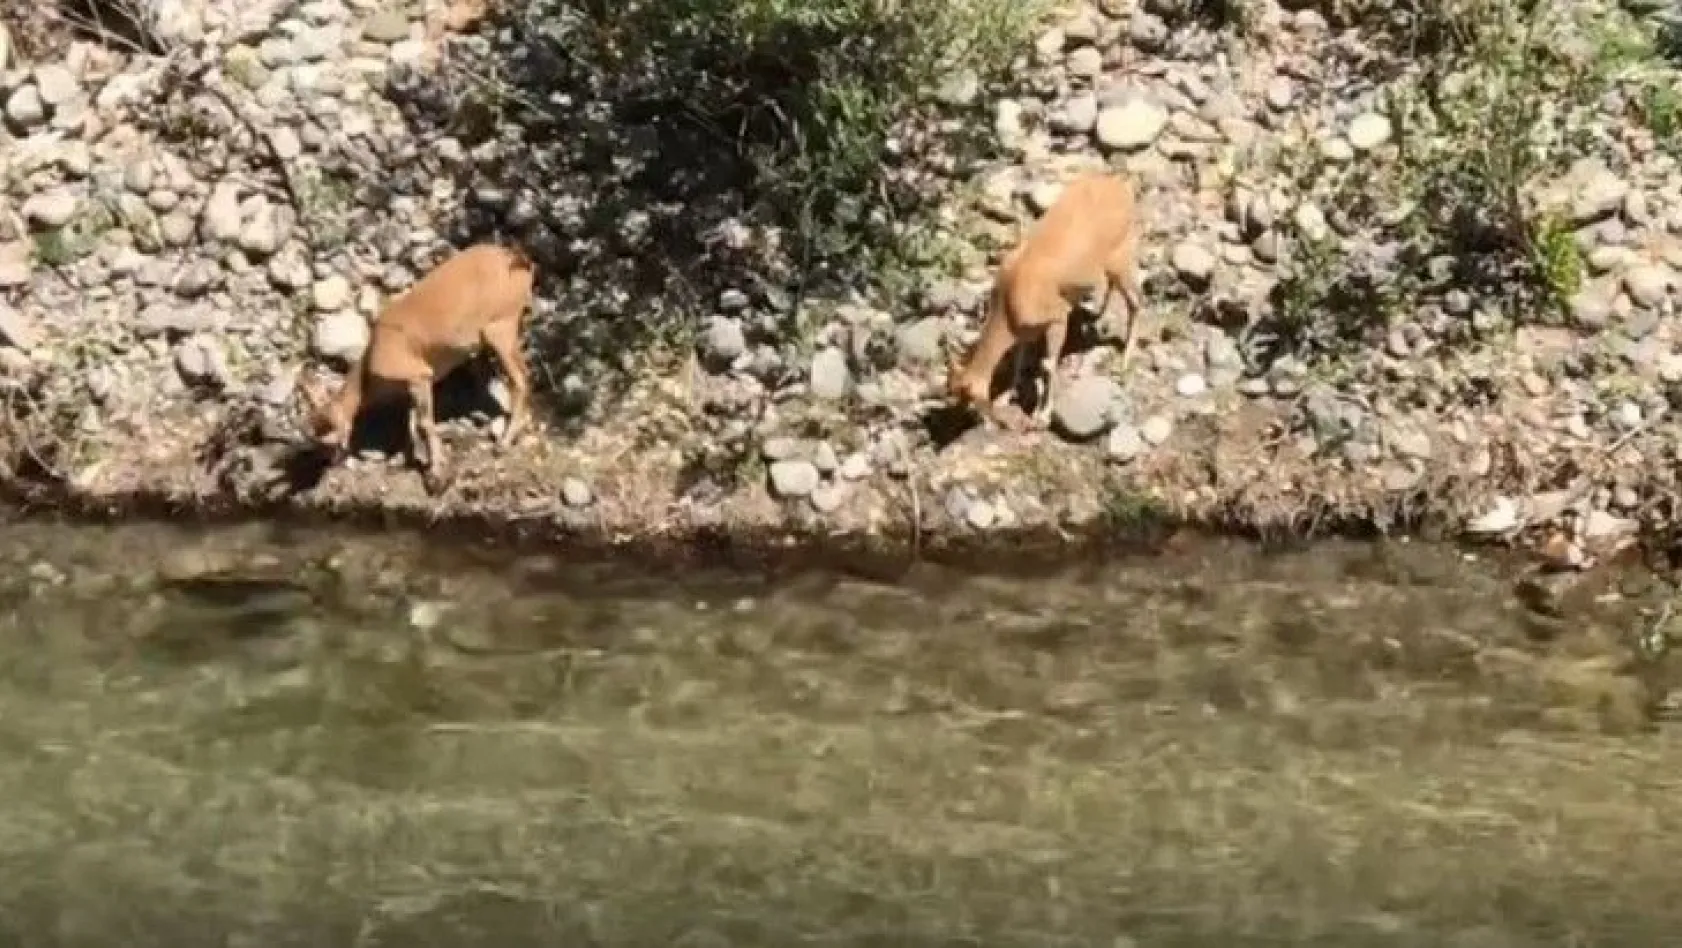 Su kıyısına inen dağ keçileri görüntülendi